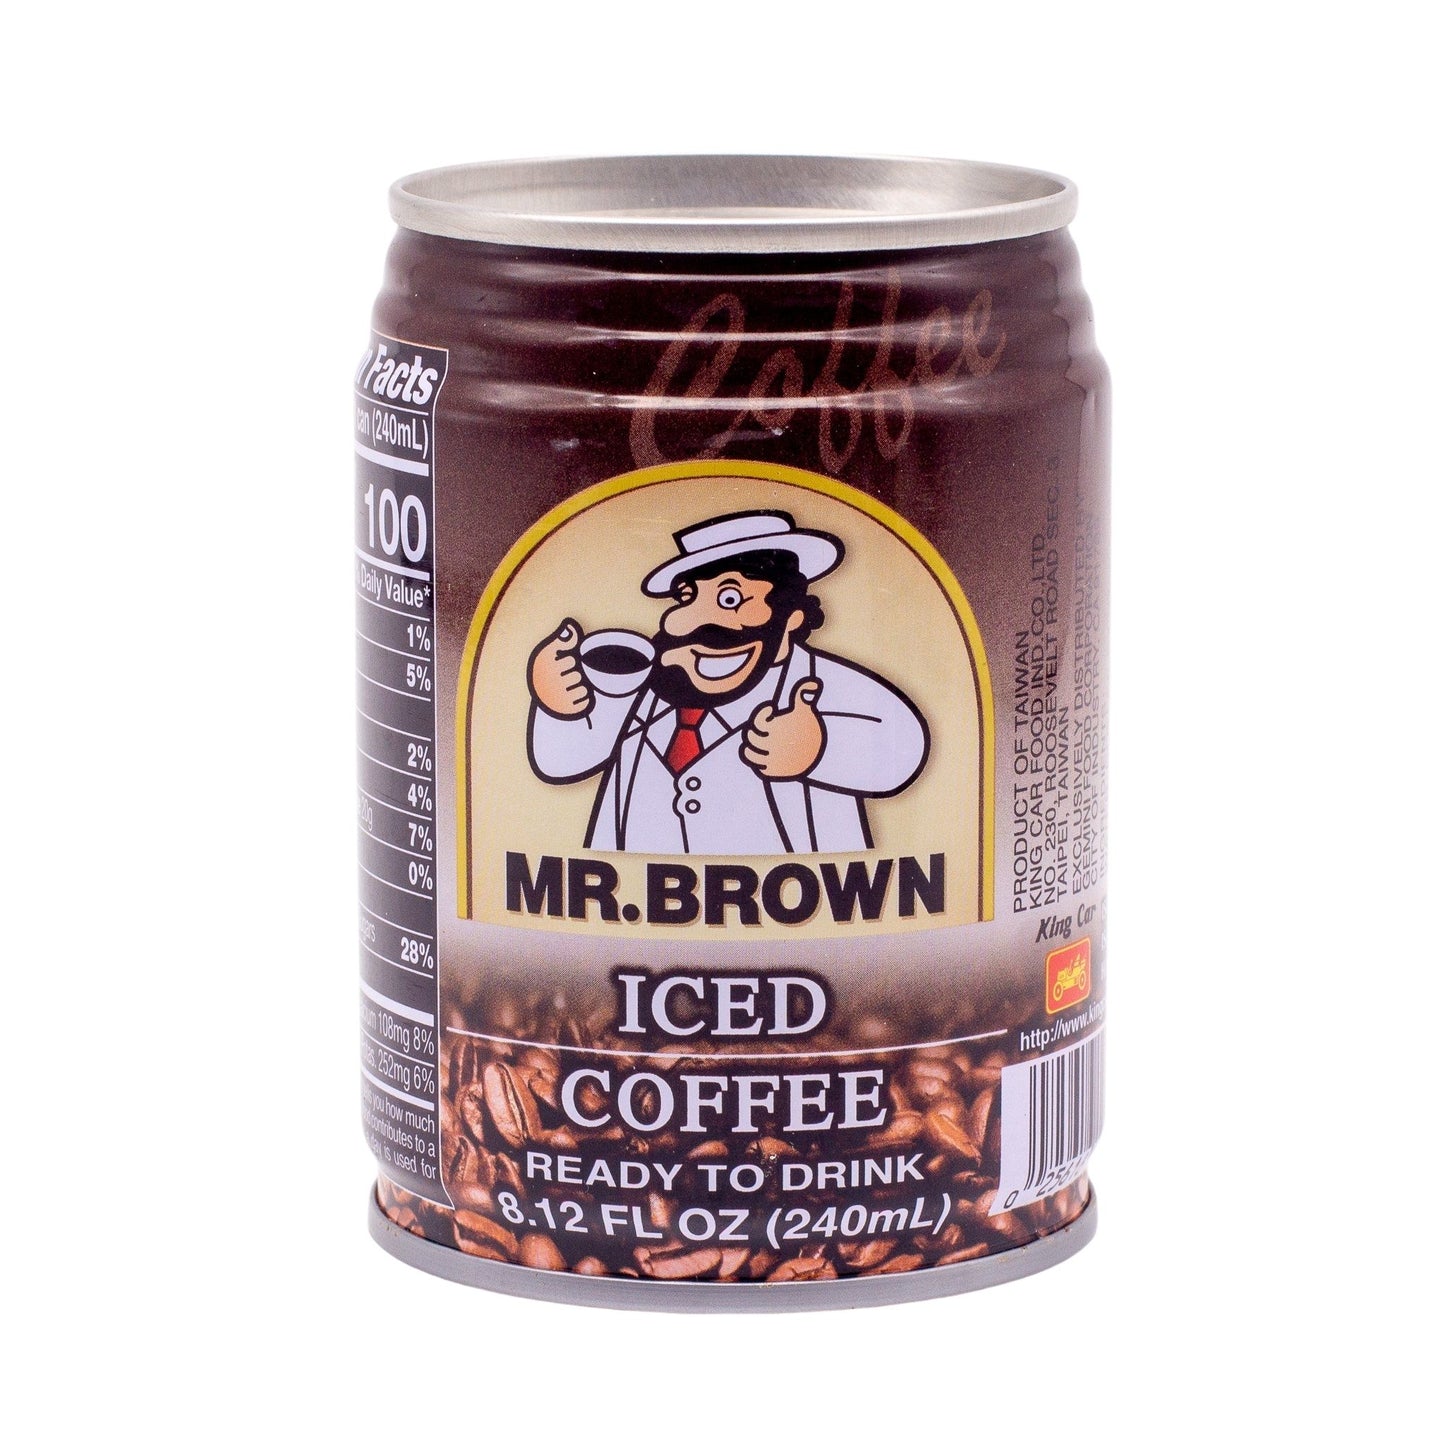 Mr. Brown Iced Coffee 伯朗咖啡原味 (1 CASE, 24x8.12oz）